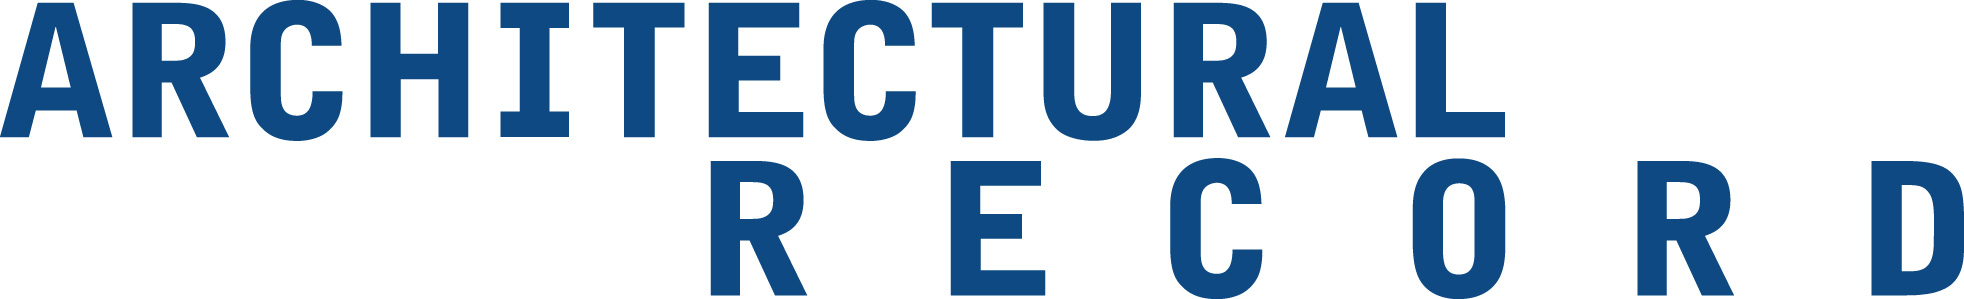 Architectural Record Logo